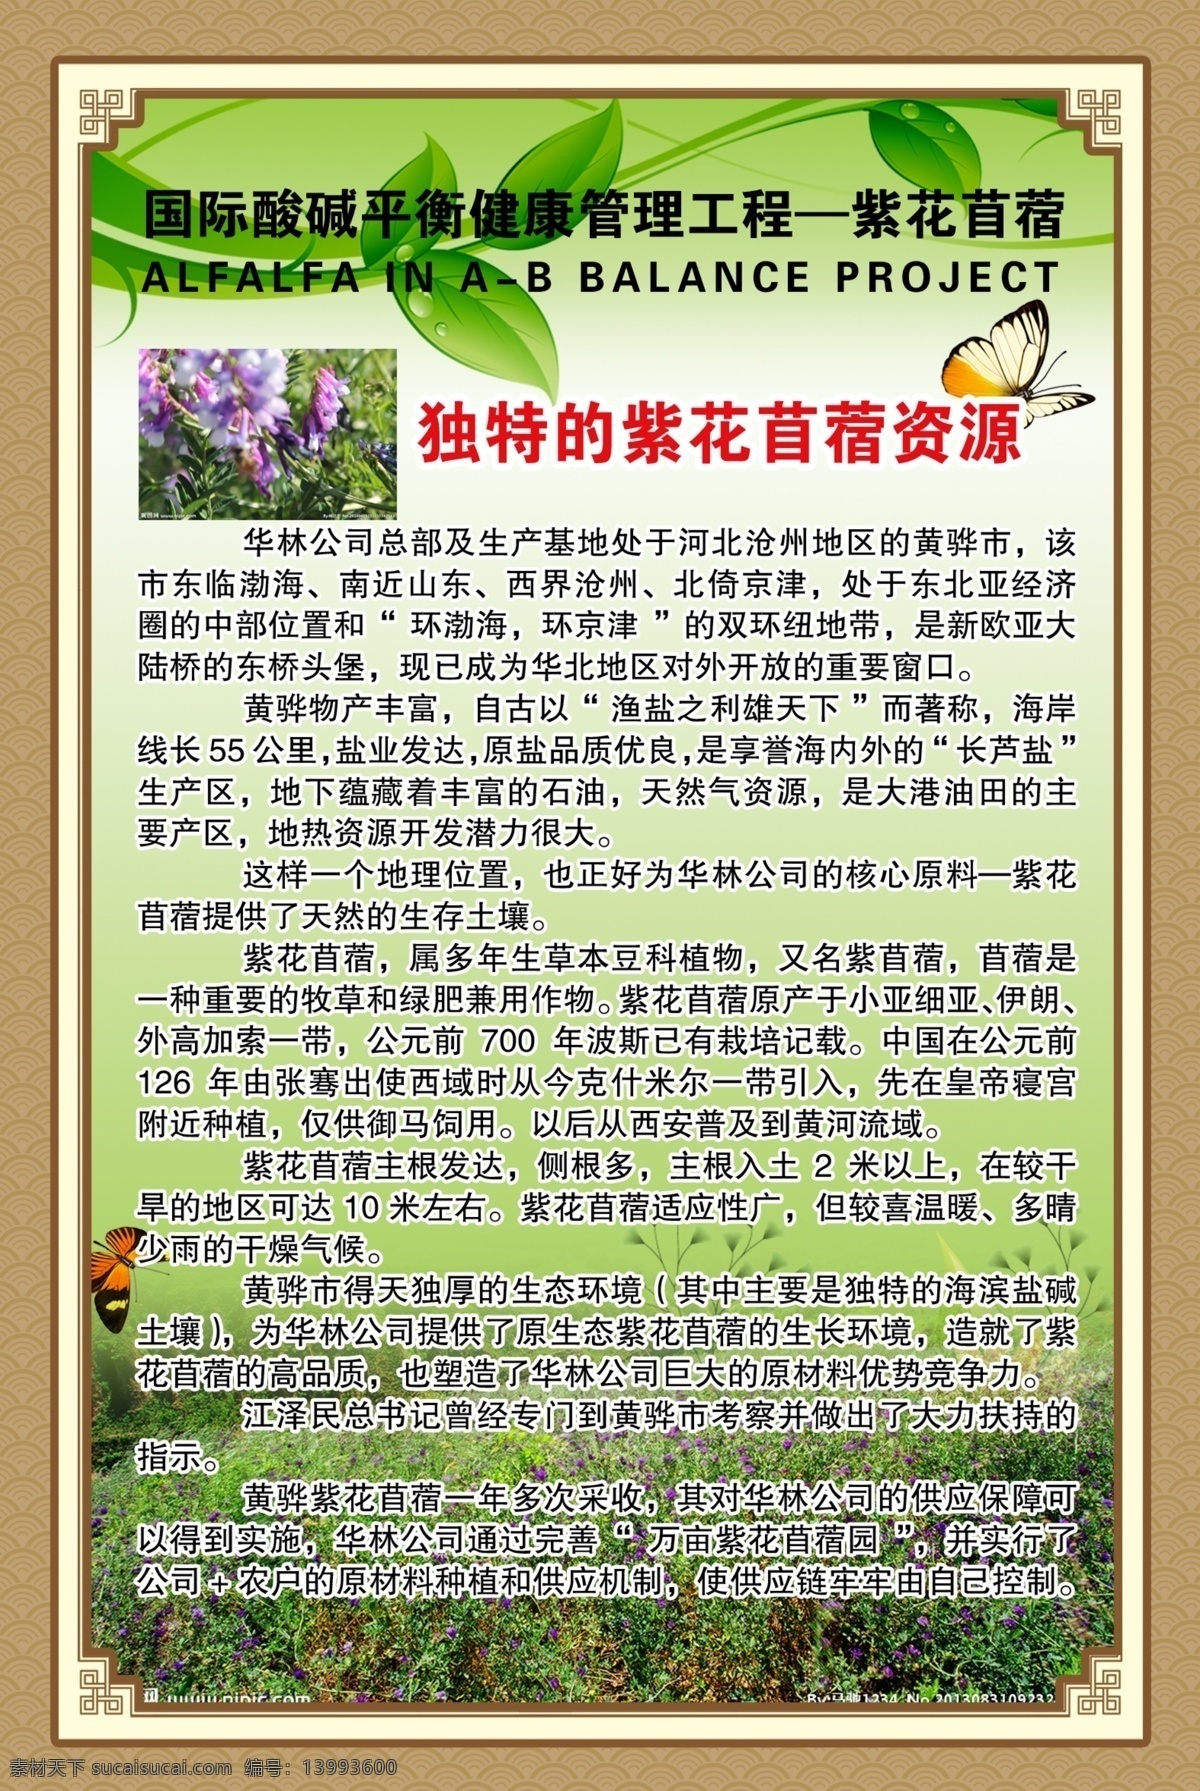 紫花苜蓿 资源 酸碱平衡 华林公司 健康管理 分层